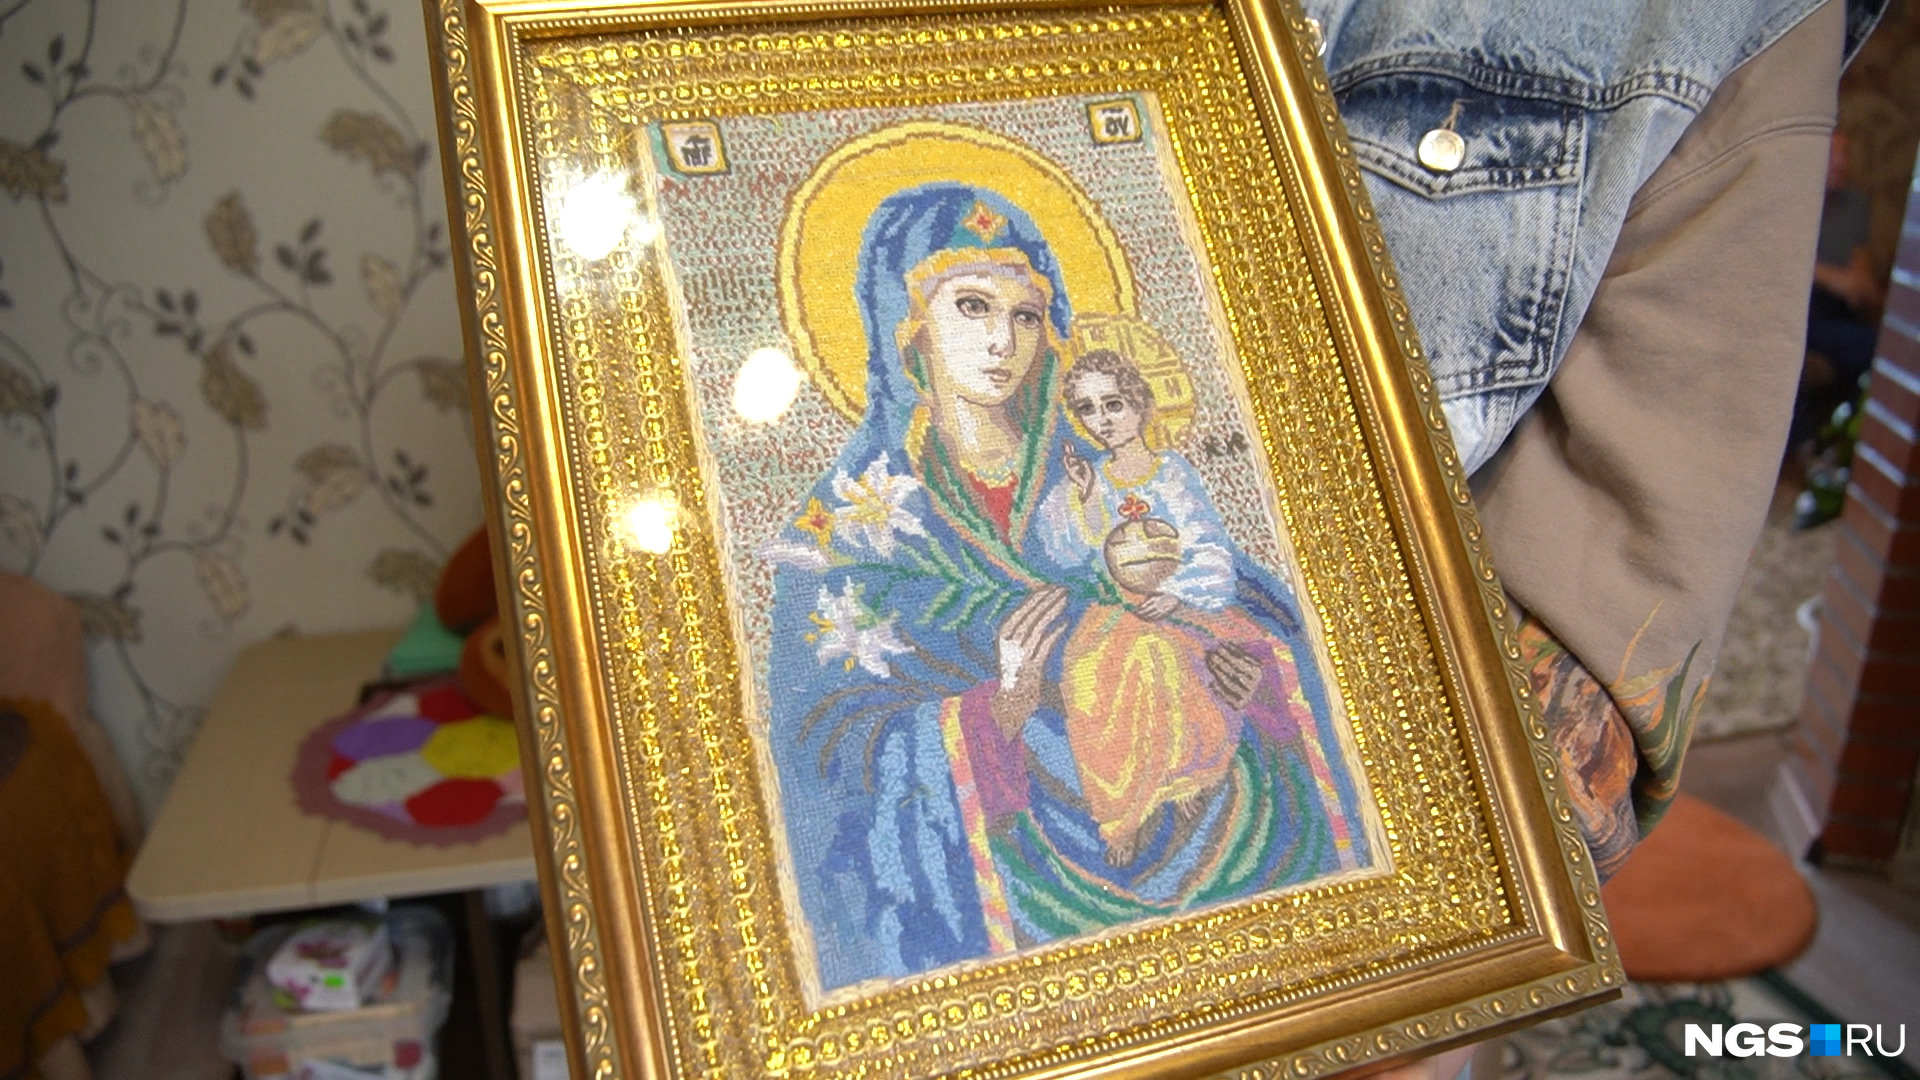 Удивительные иконы, вышитые Марией Федоровной, есть в доме каждого из ее близких: глаза и руки у бабушки — на зависть молодым